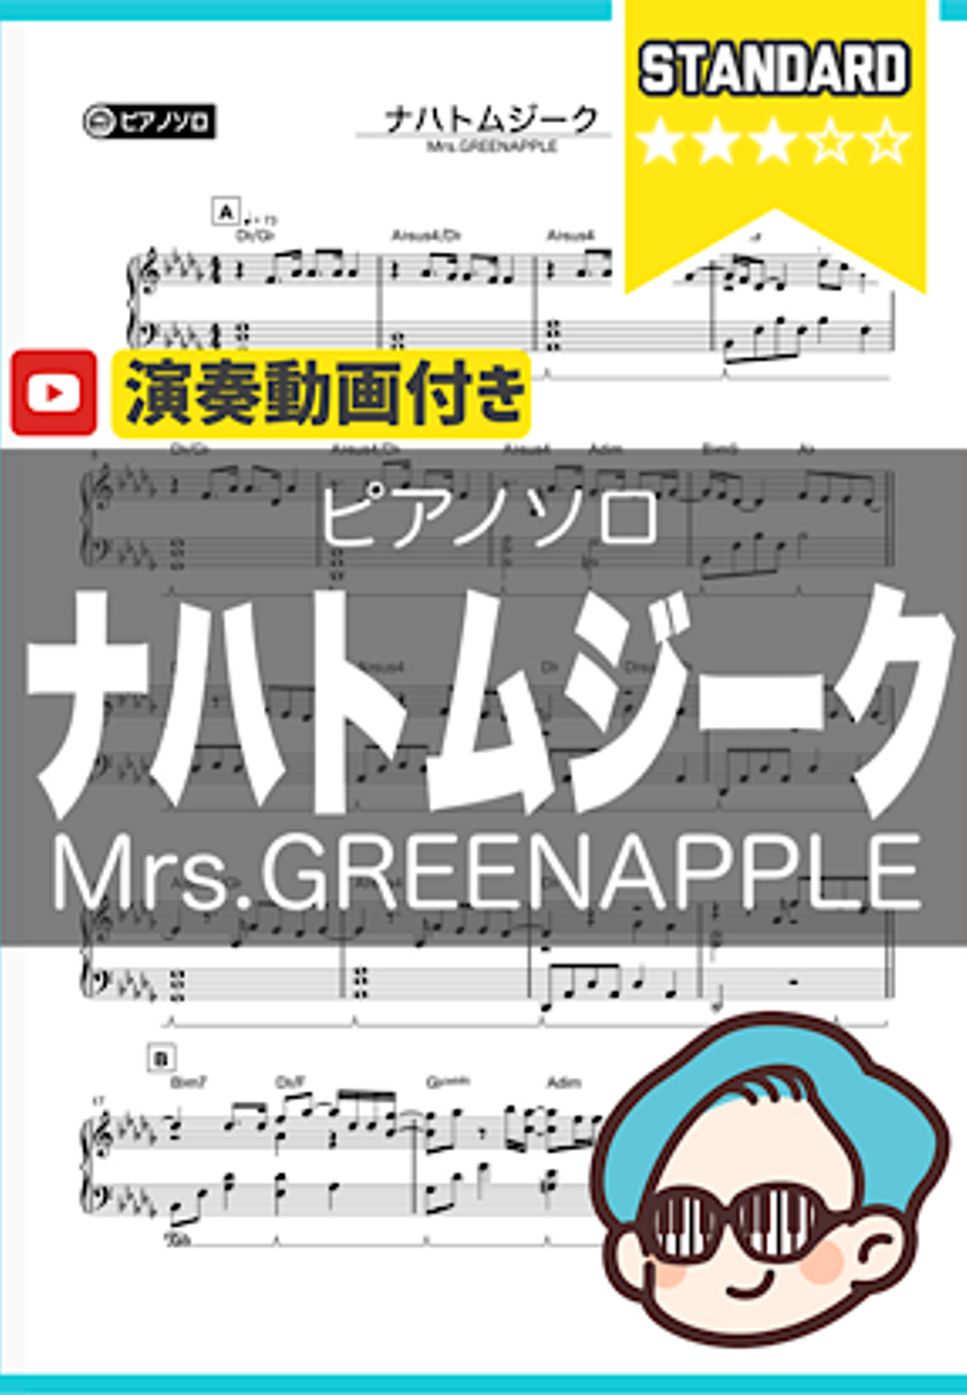 Mrs.GREENAPPLE - ナハトムジーク by シータピアノ